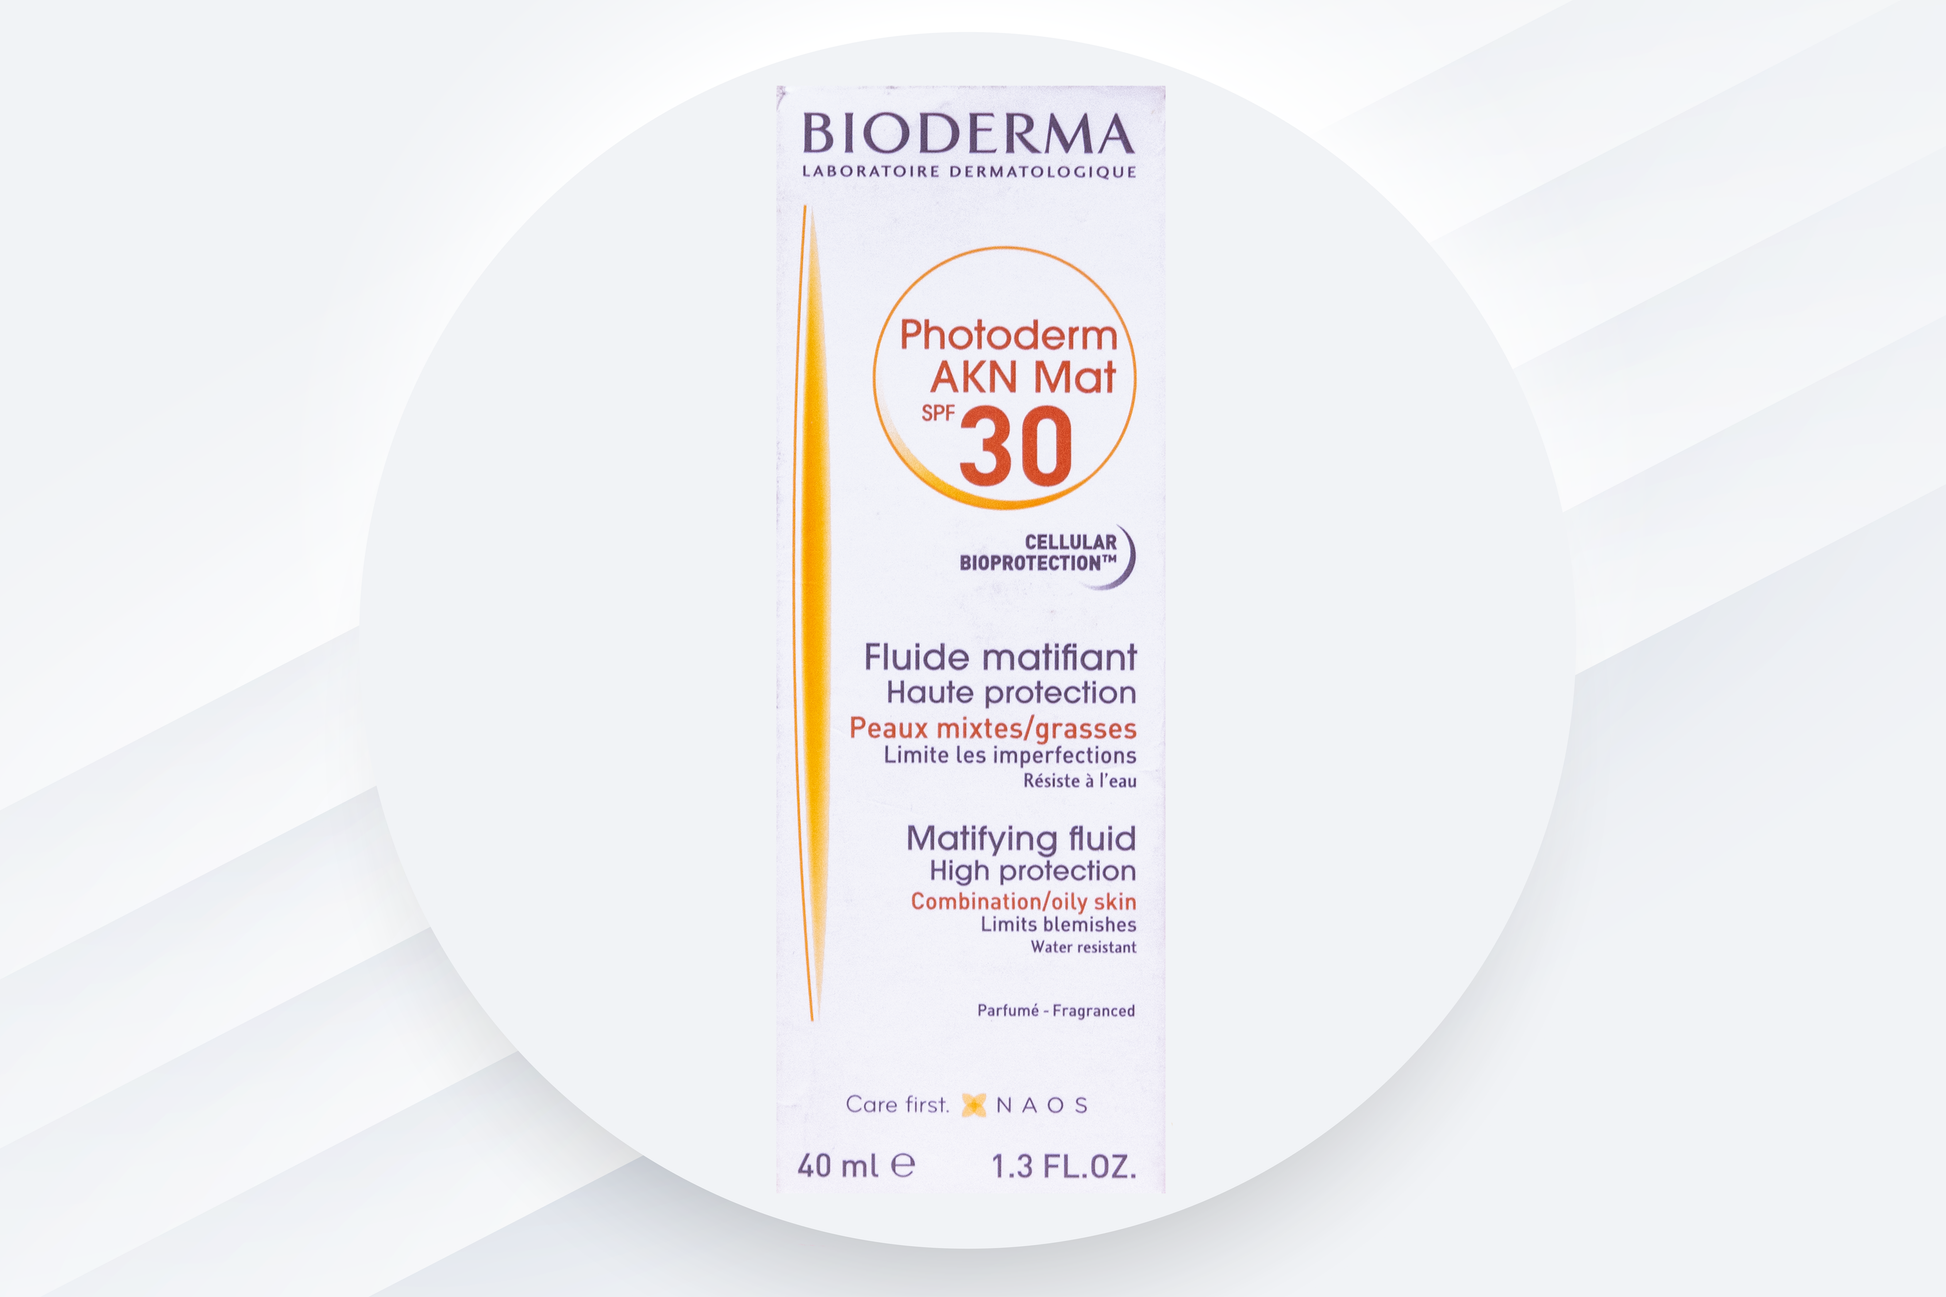 Bioderma-Photoderm-AKN-Mat-Sunscreen-SPF-30-Clintry